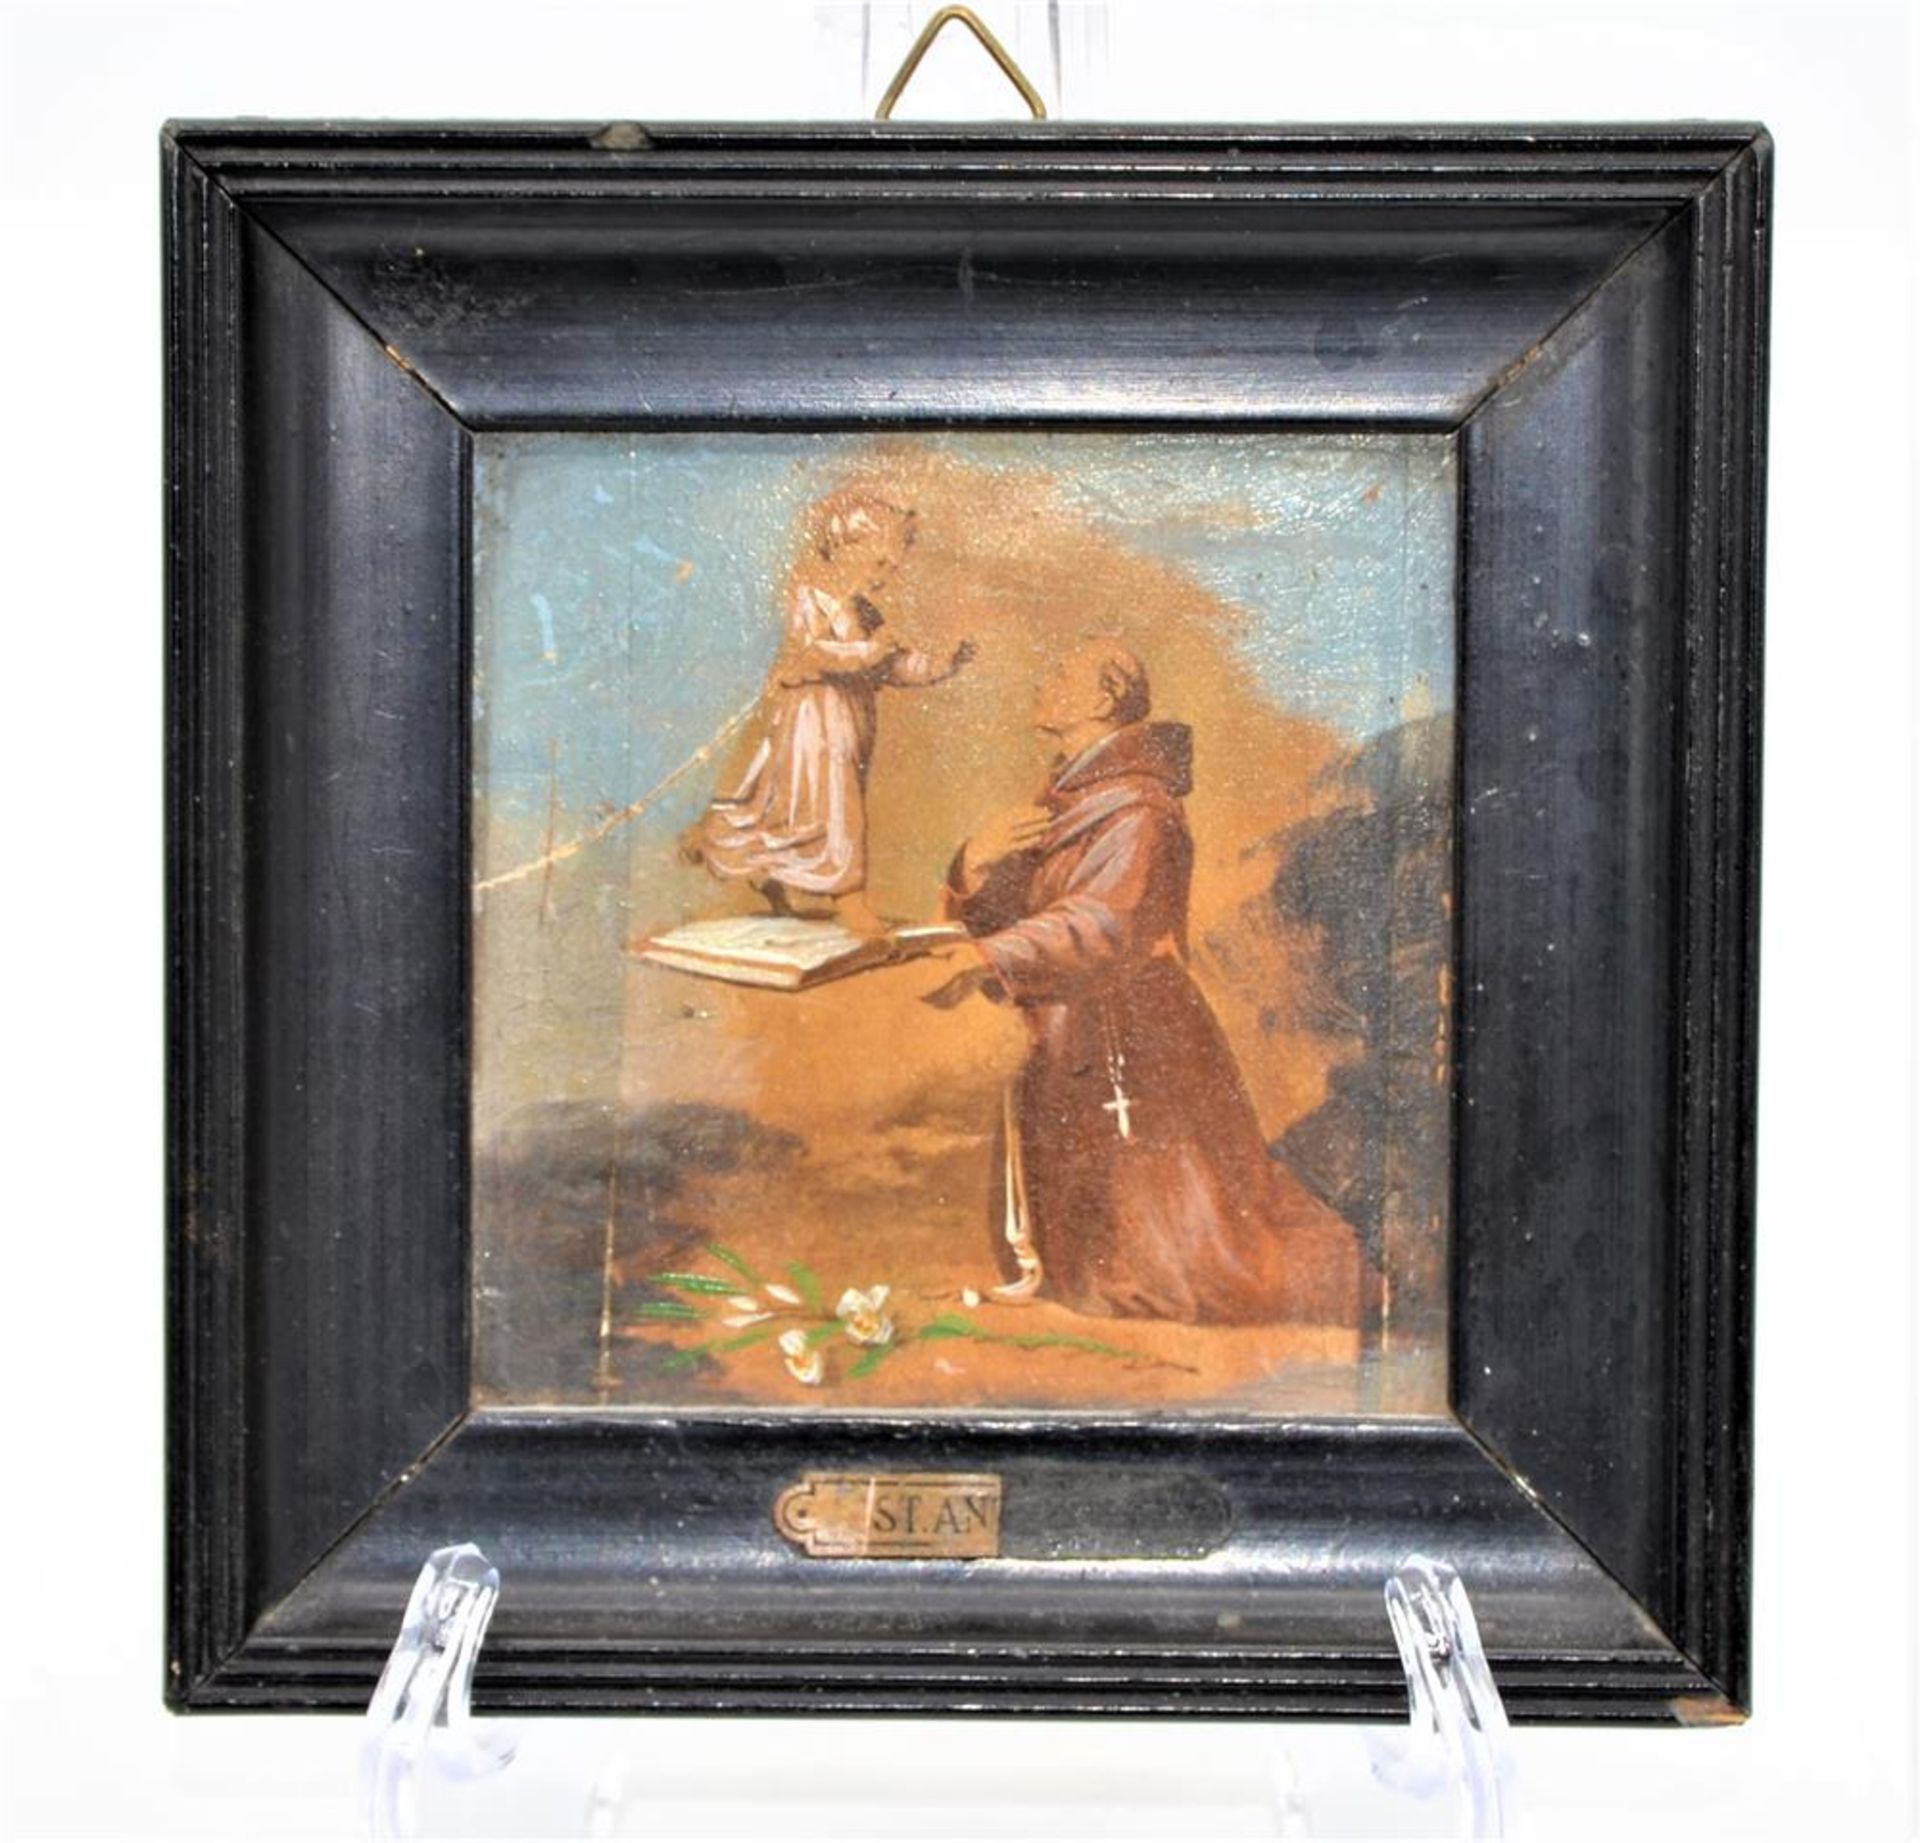 Gemälde klein St. Antonius von Padua mit Jesuskind, beschädigt Brüche, 12x12cm (mit Rahmen)